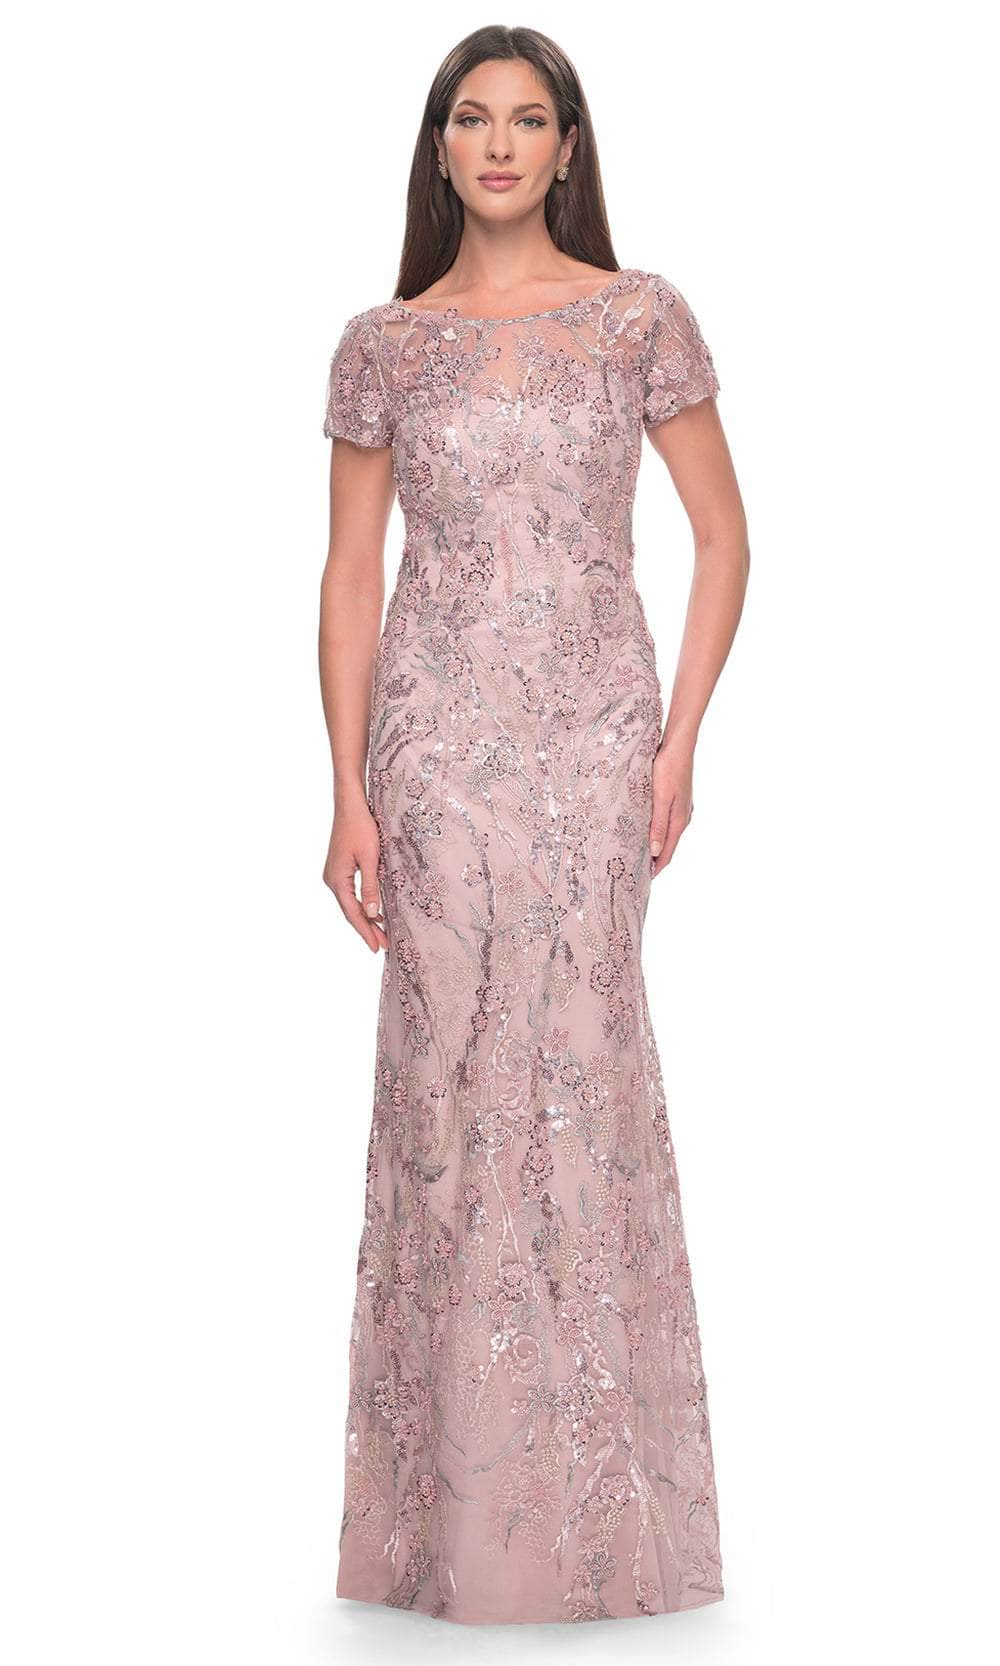 Image of La Femme 31672 - Beaded Floral Patterned Short Sleeve Evening Dress